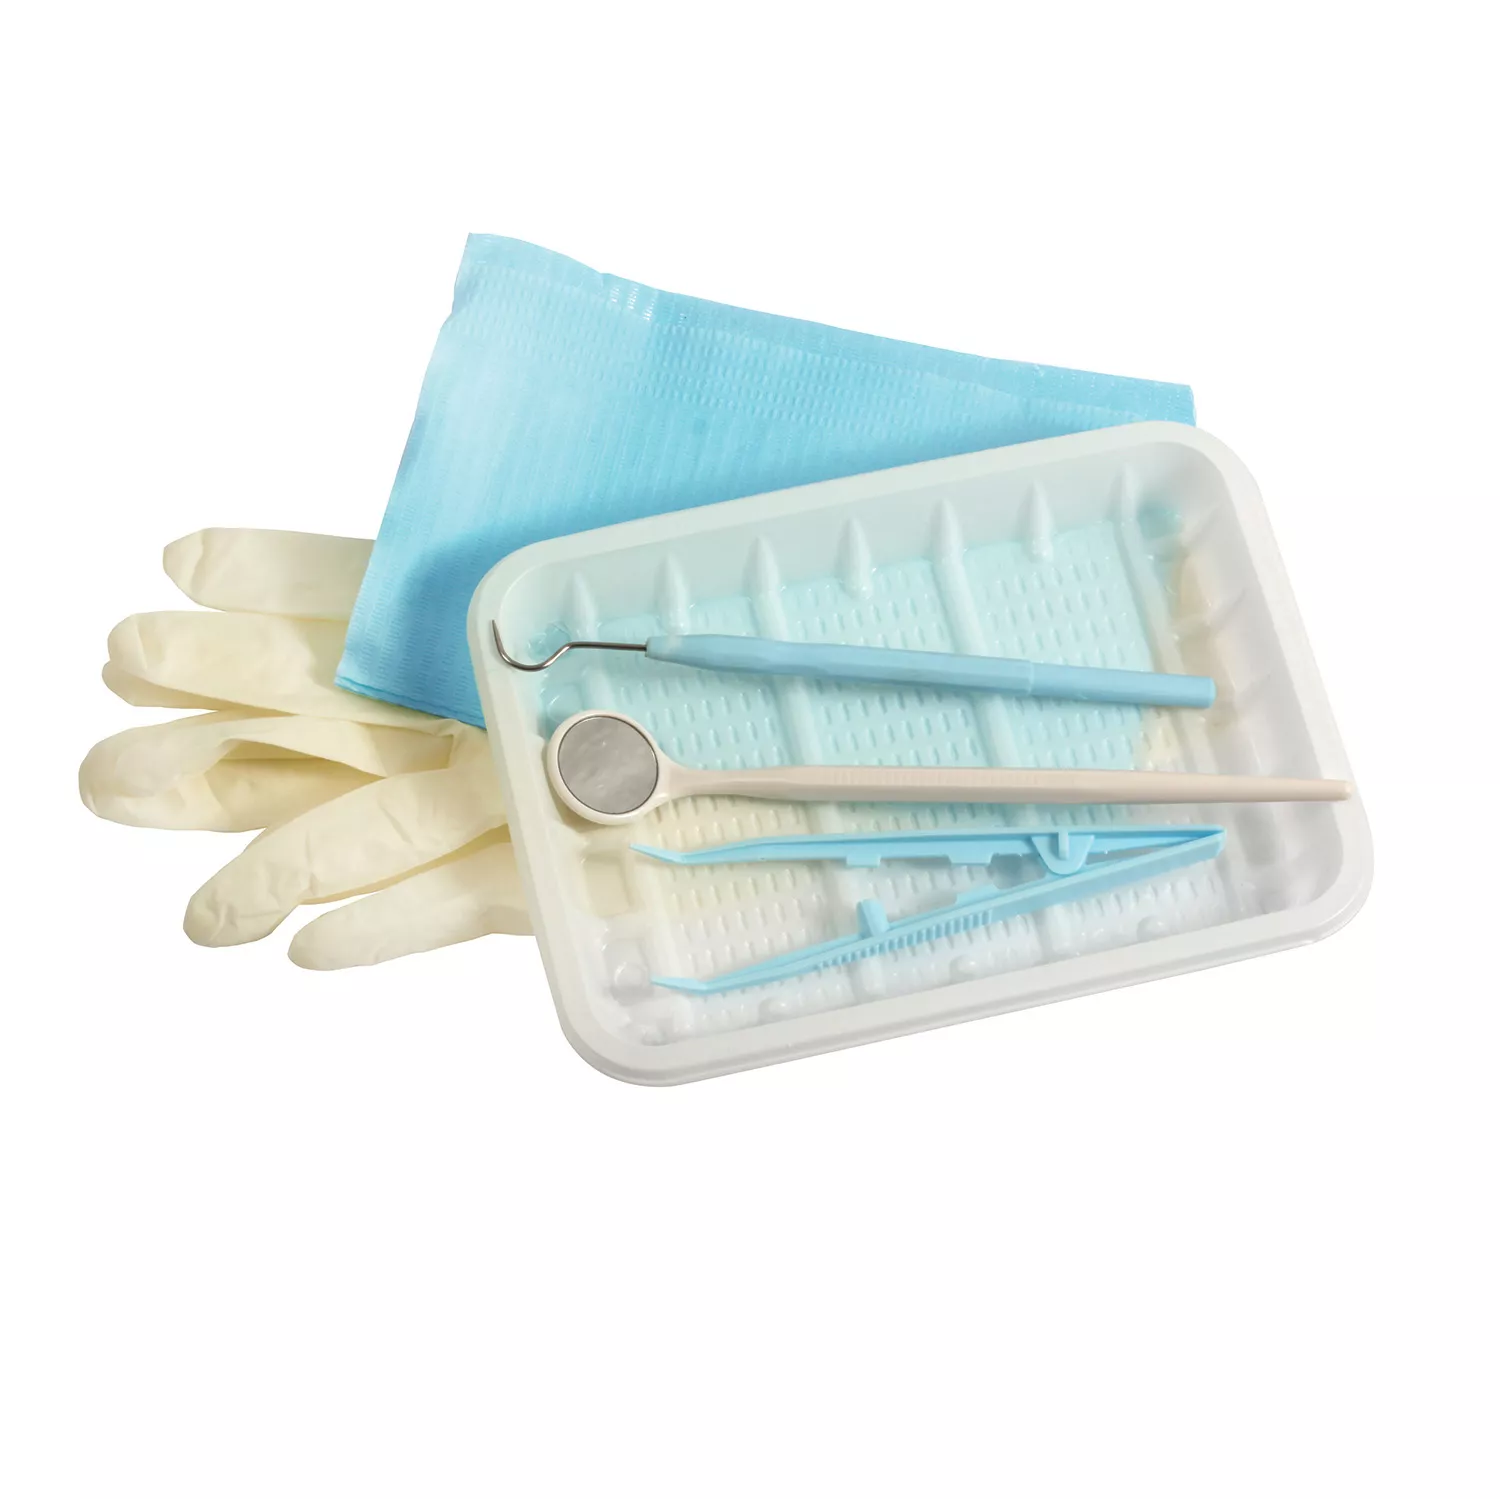 Набор стоматологический одноразовый стерильный ЕваДент тип 1 (зеркало стоматологическое, зонд стоматологический, пинцет, салфетка нагрудная, перчатки)